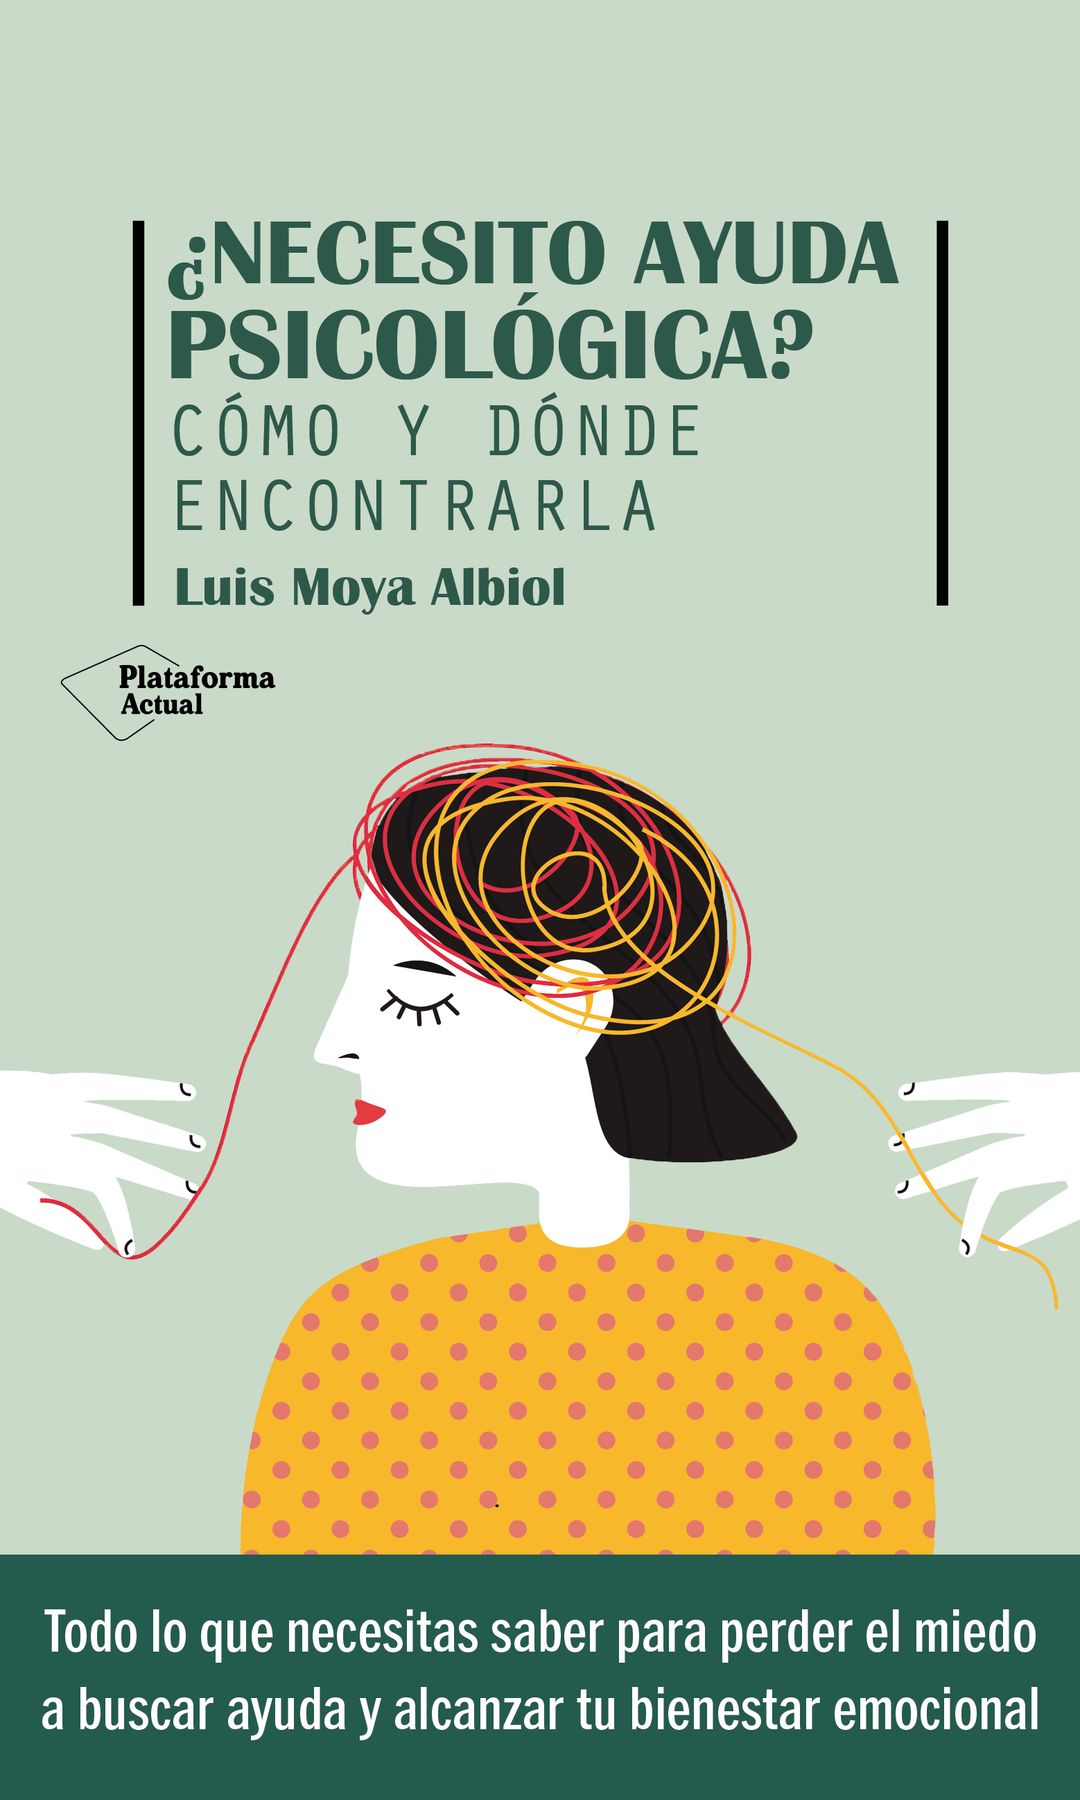 Porta del libro ¿Necesito ayuda psicológica? del doctor Luis Moya Albiol